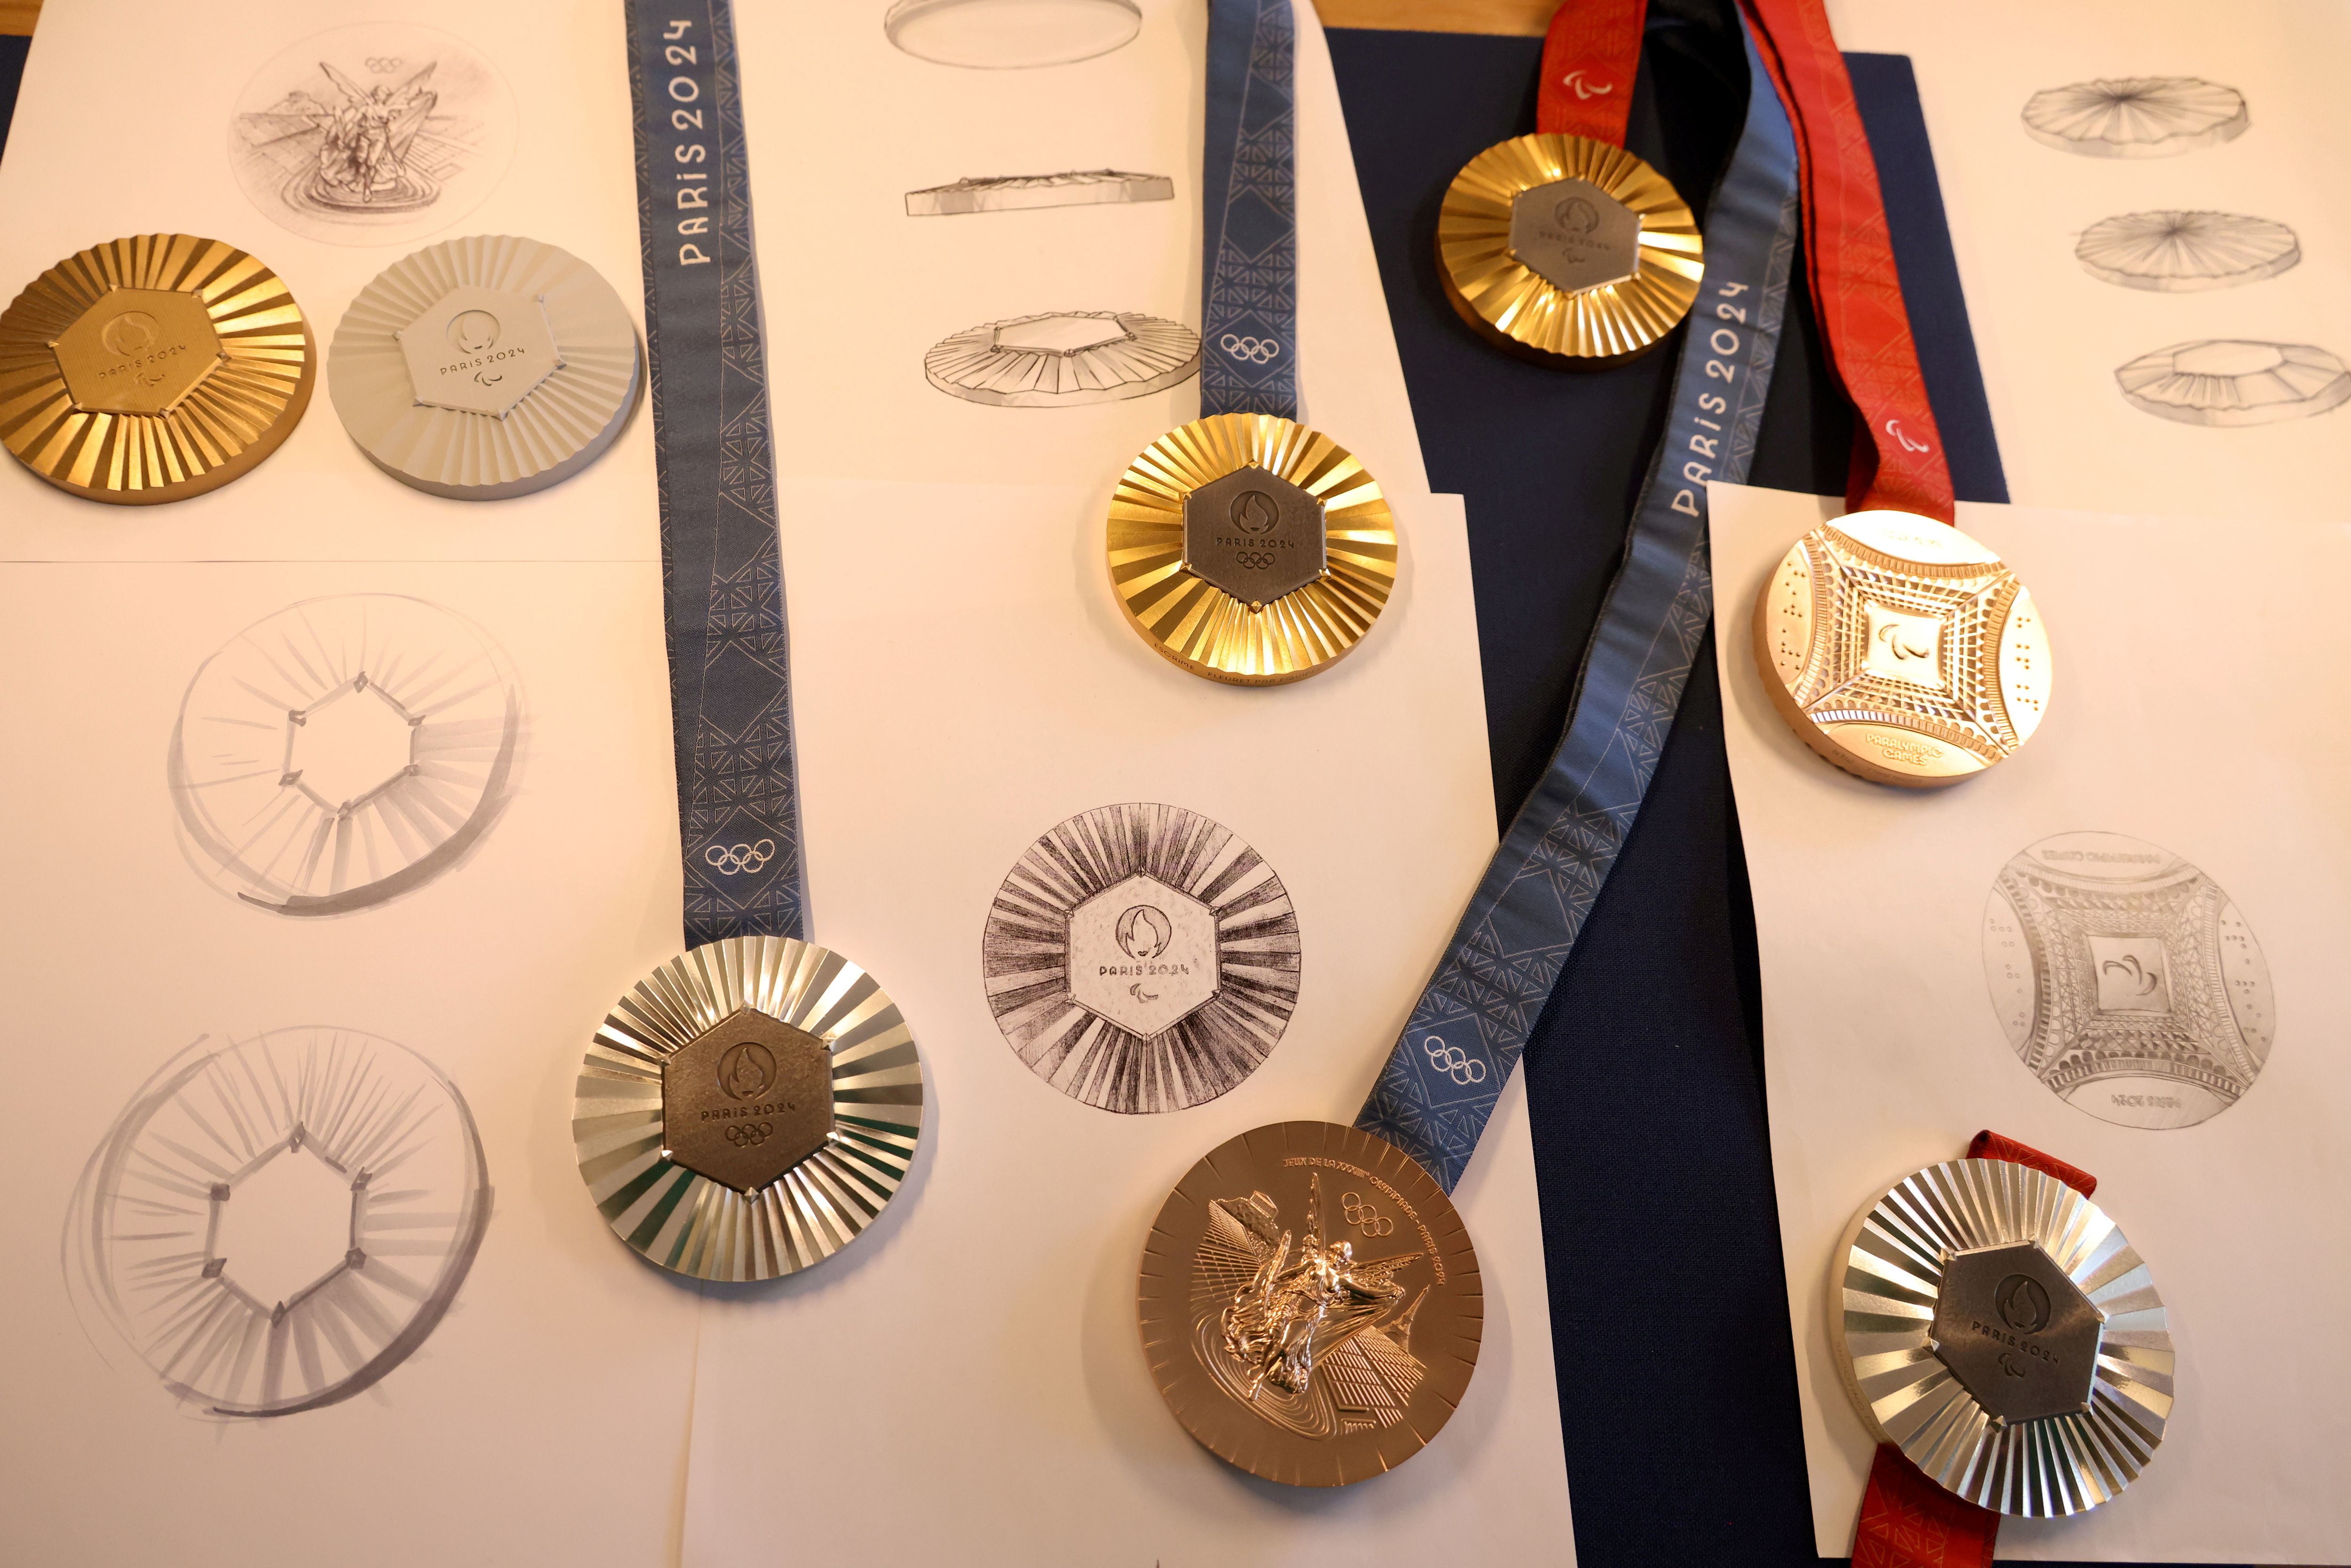 Présentation  des médailles olympiques Paris 2024 chez le bijoutier Chaumet. LP/Delphine Goldsztejn